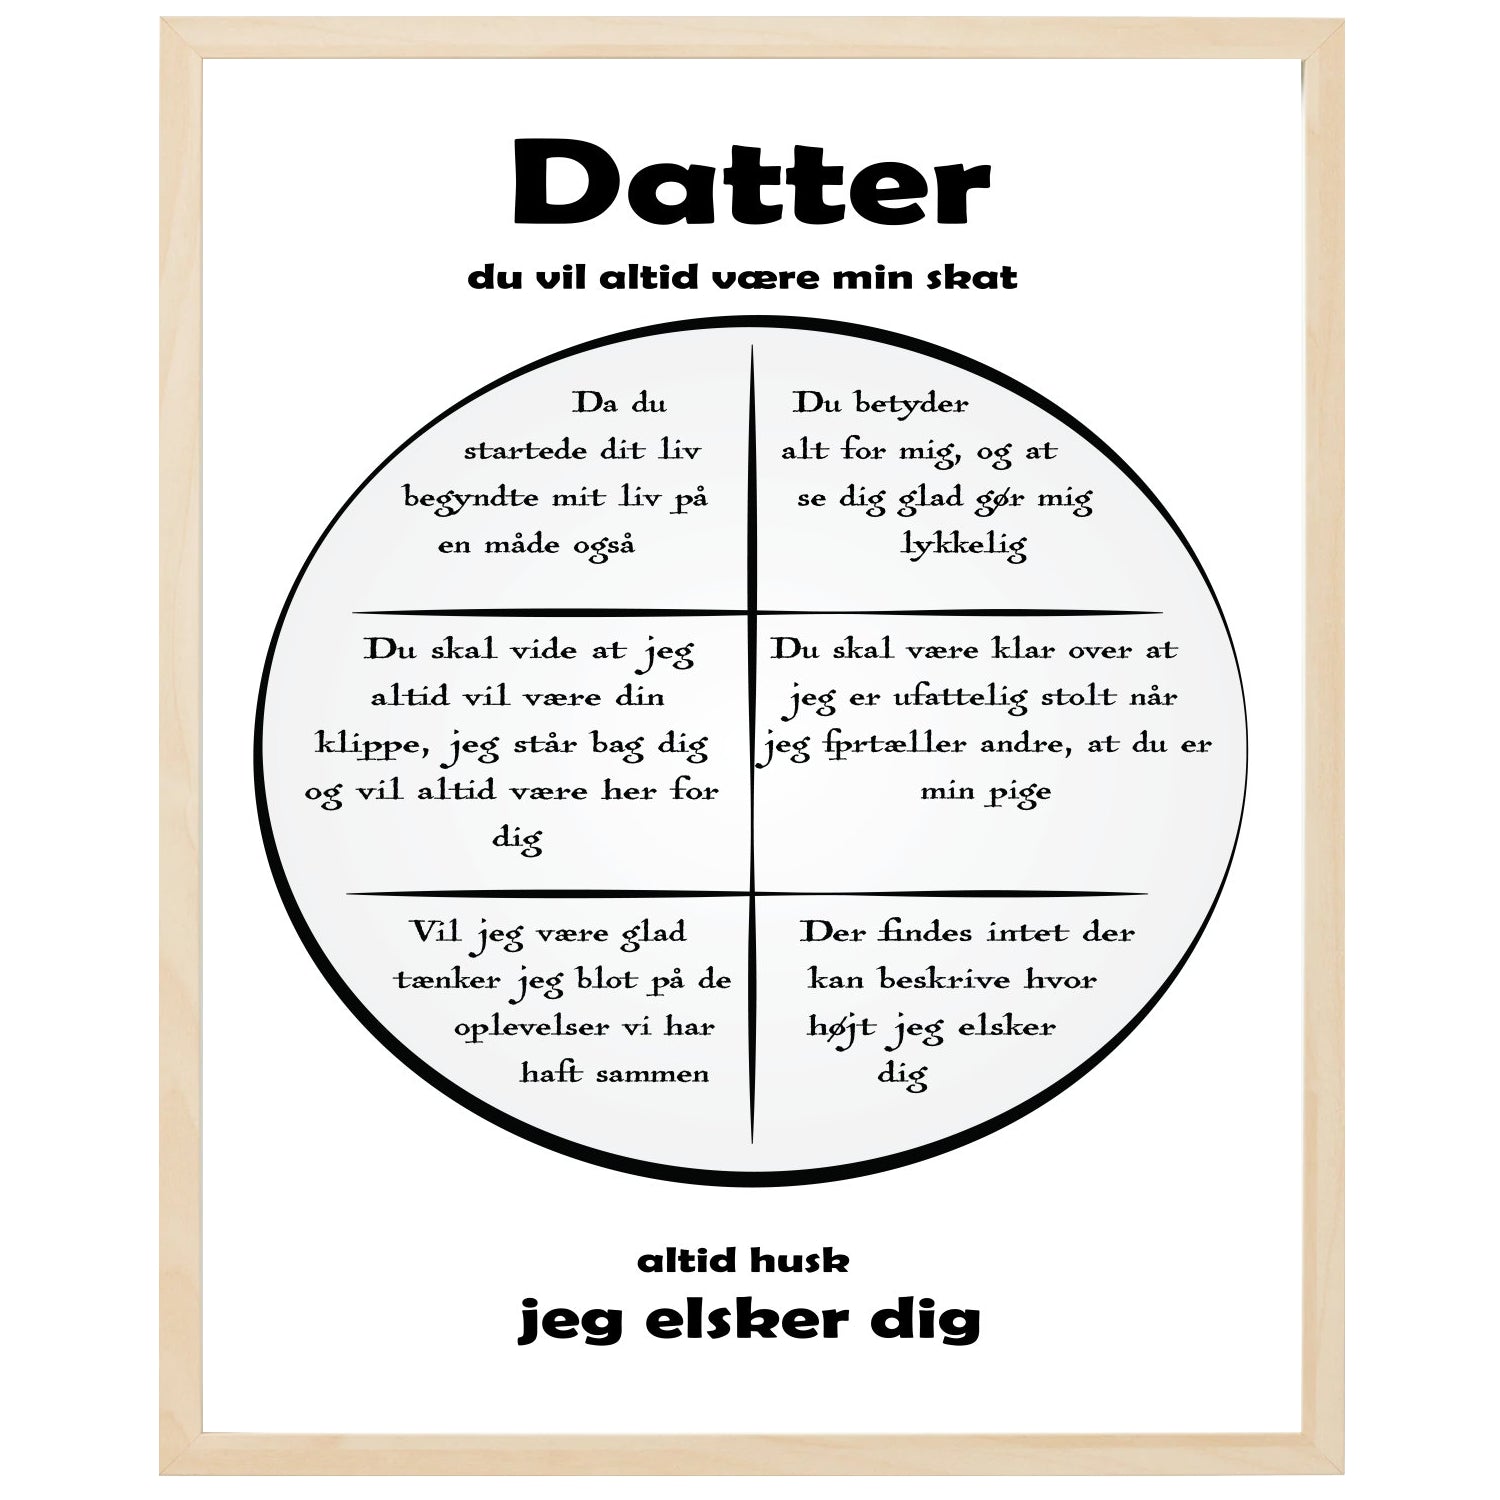 En plakat med overskriften Datter, en rustik cirkel og indeni cirklen mange positive sætninger som beskriver en Datter